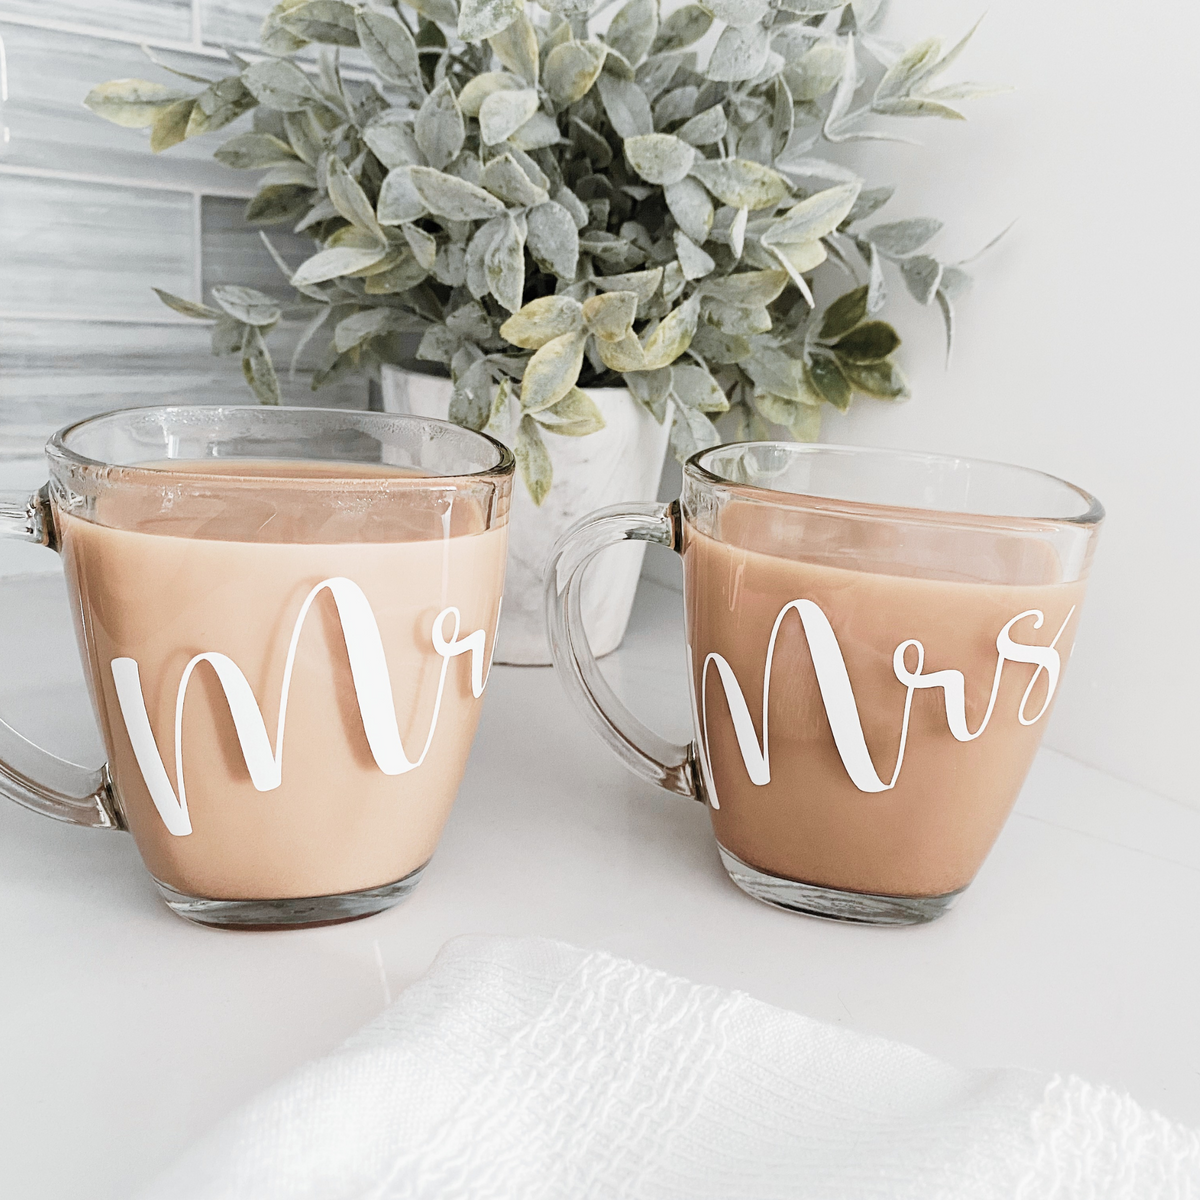 Couple's Coffee Mugs